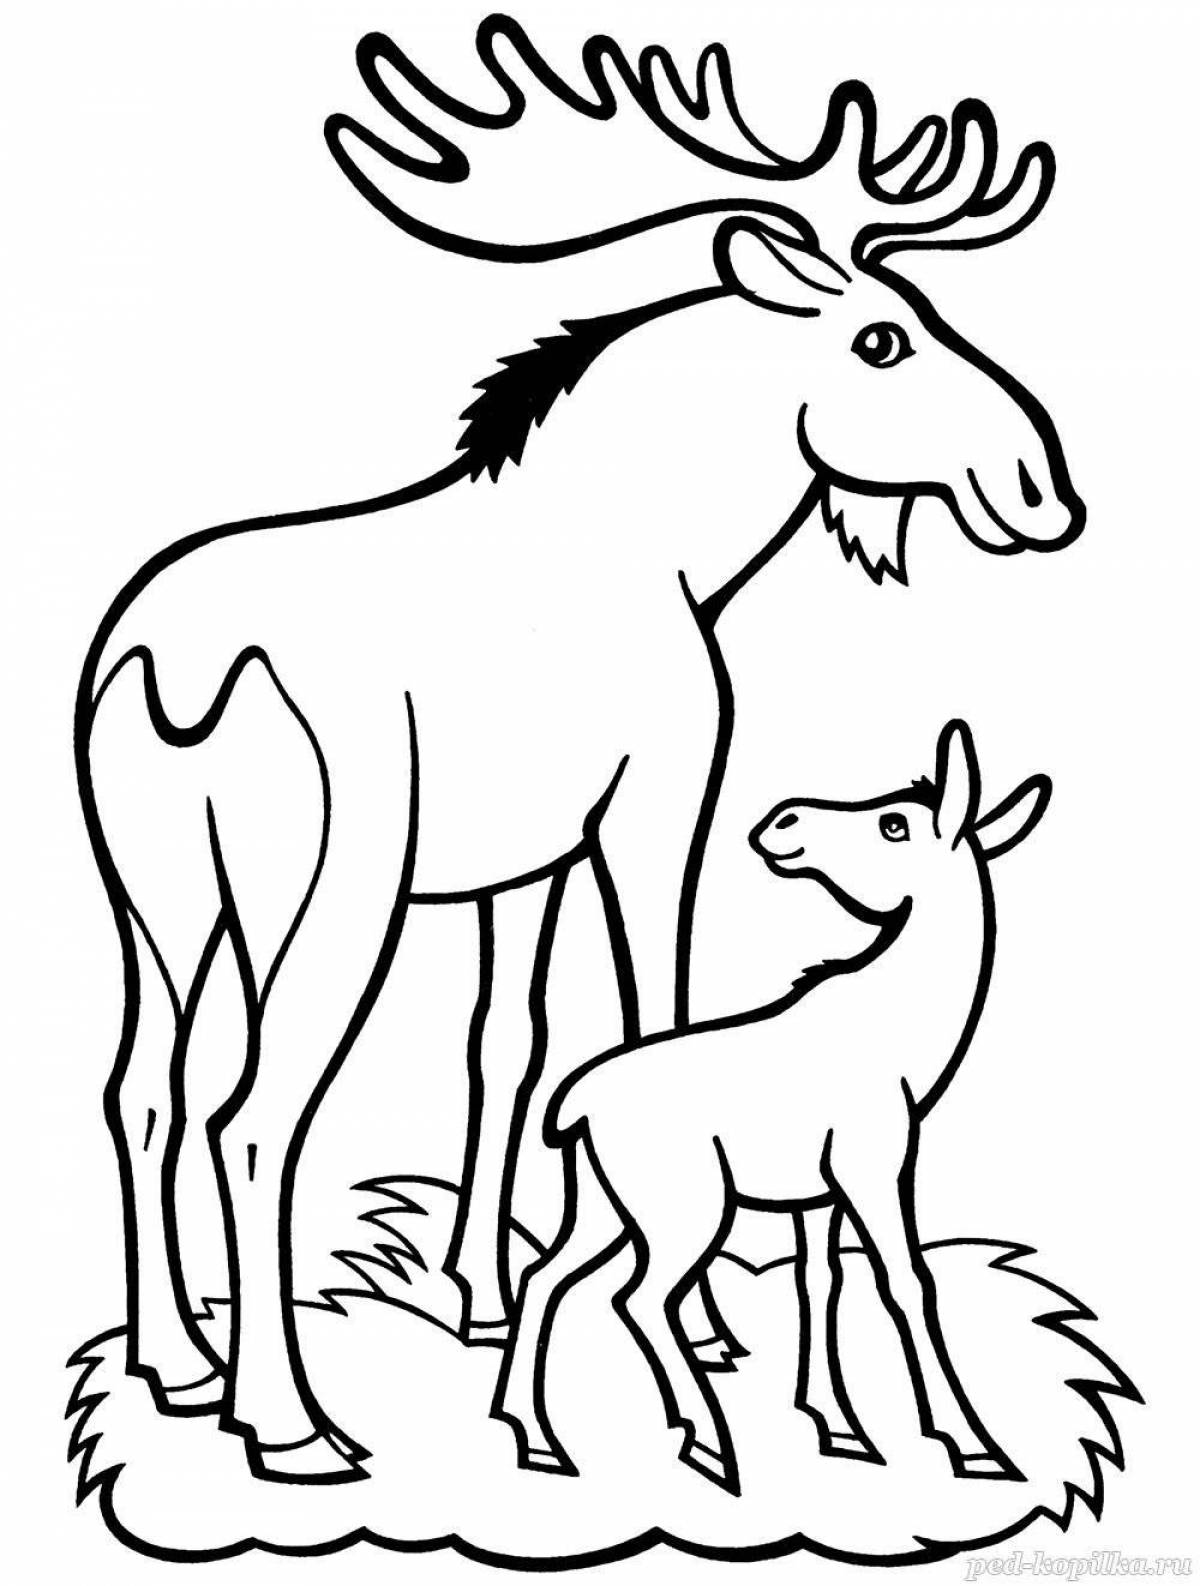 Sparkling elk coloring book for kids